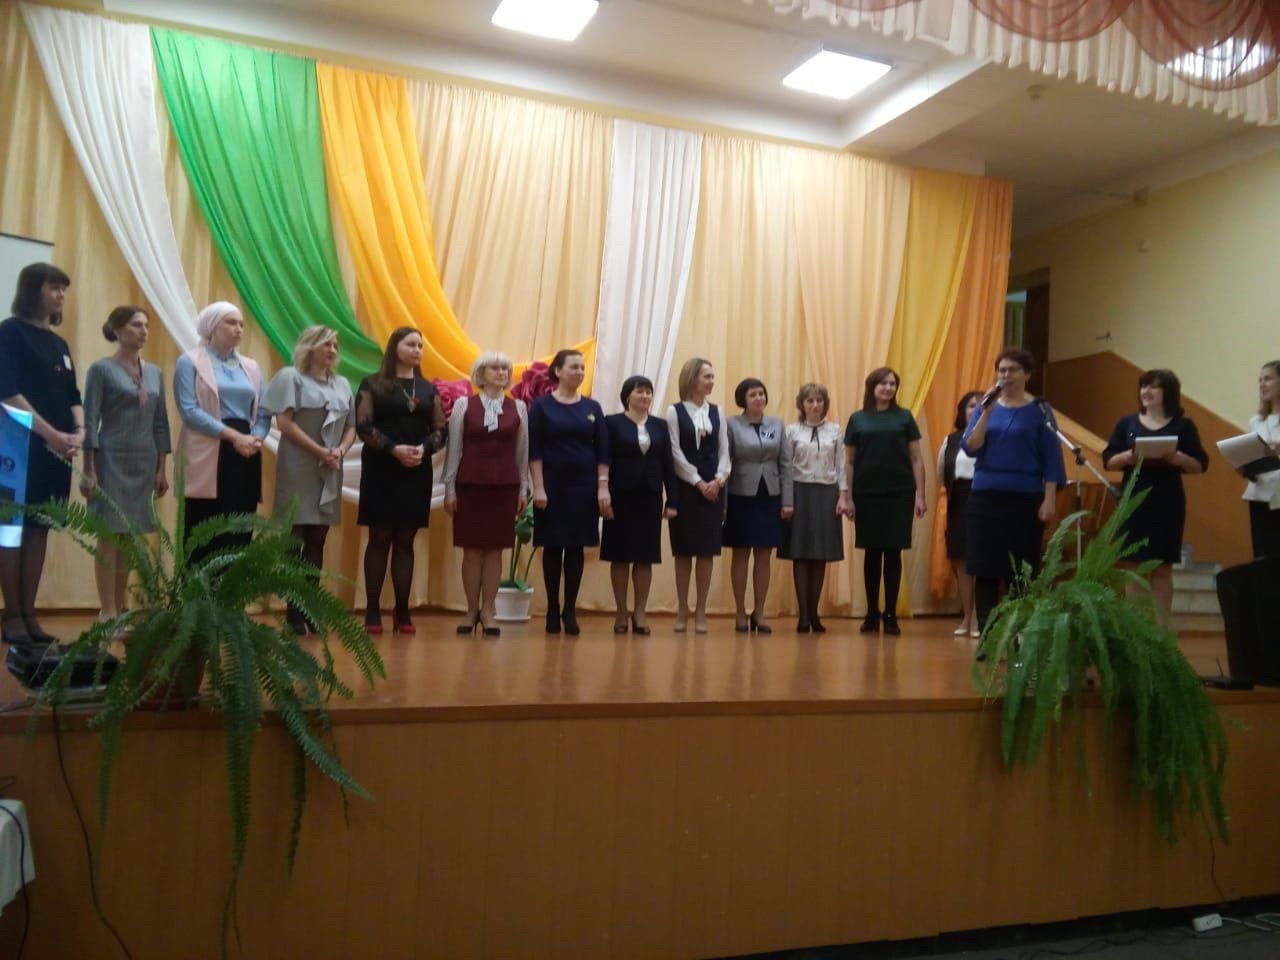 В Нурлате проходит муниципальный тур всероссийского конкурса «Учитель года-2019»